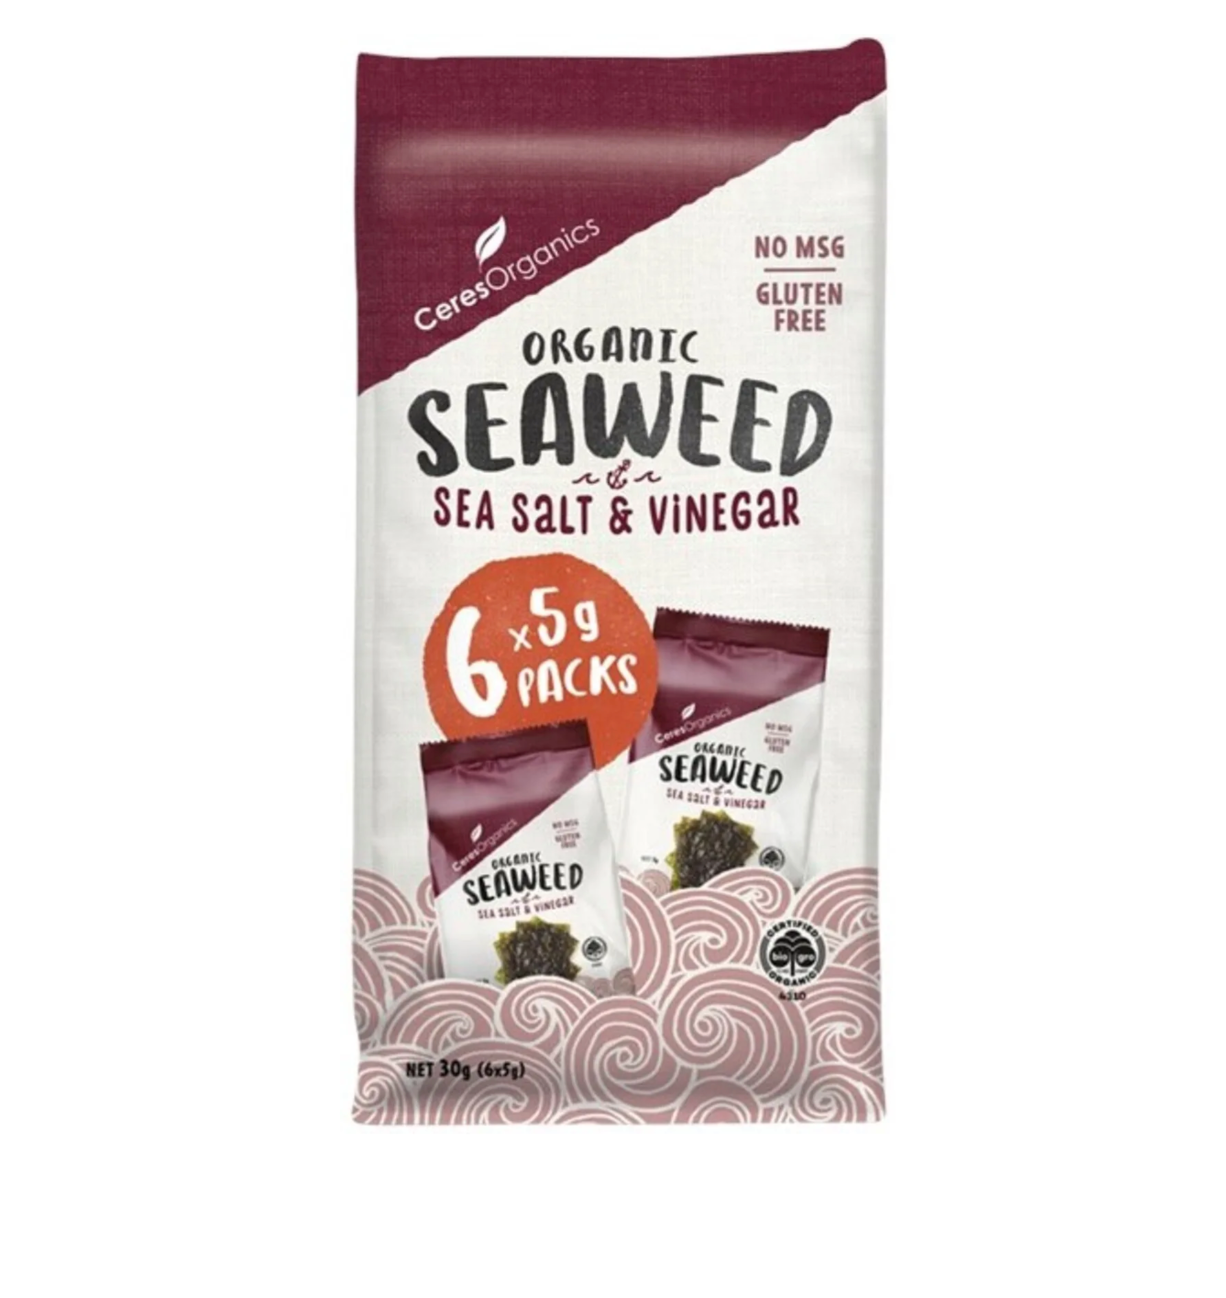 Ceres Organics Seaweed Snack - Sea Salt & Vinegar MULTI PACK